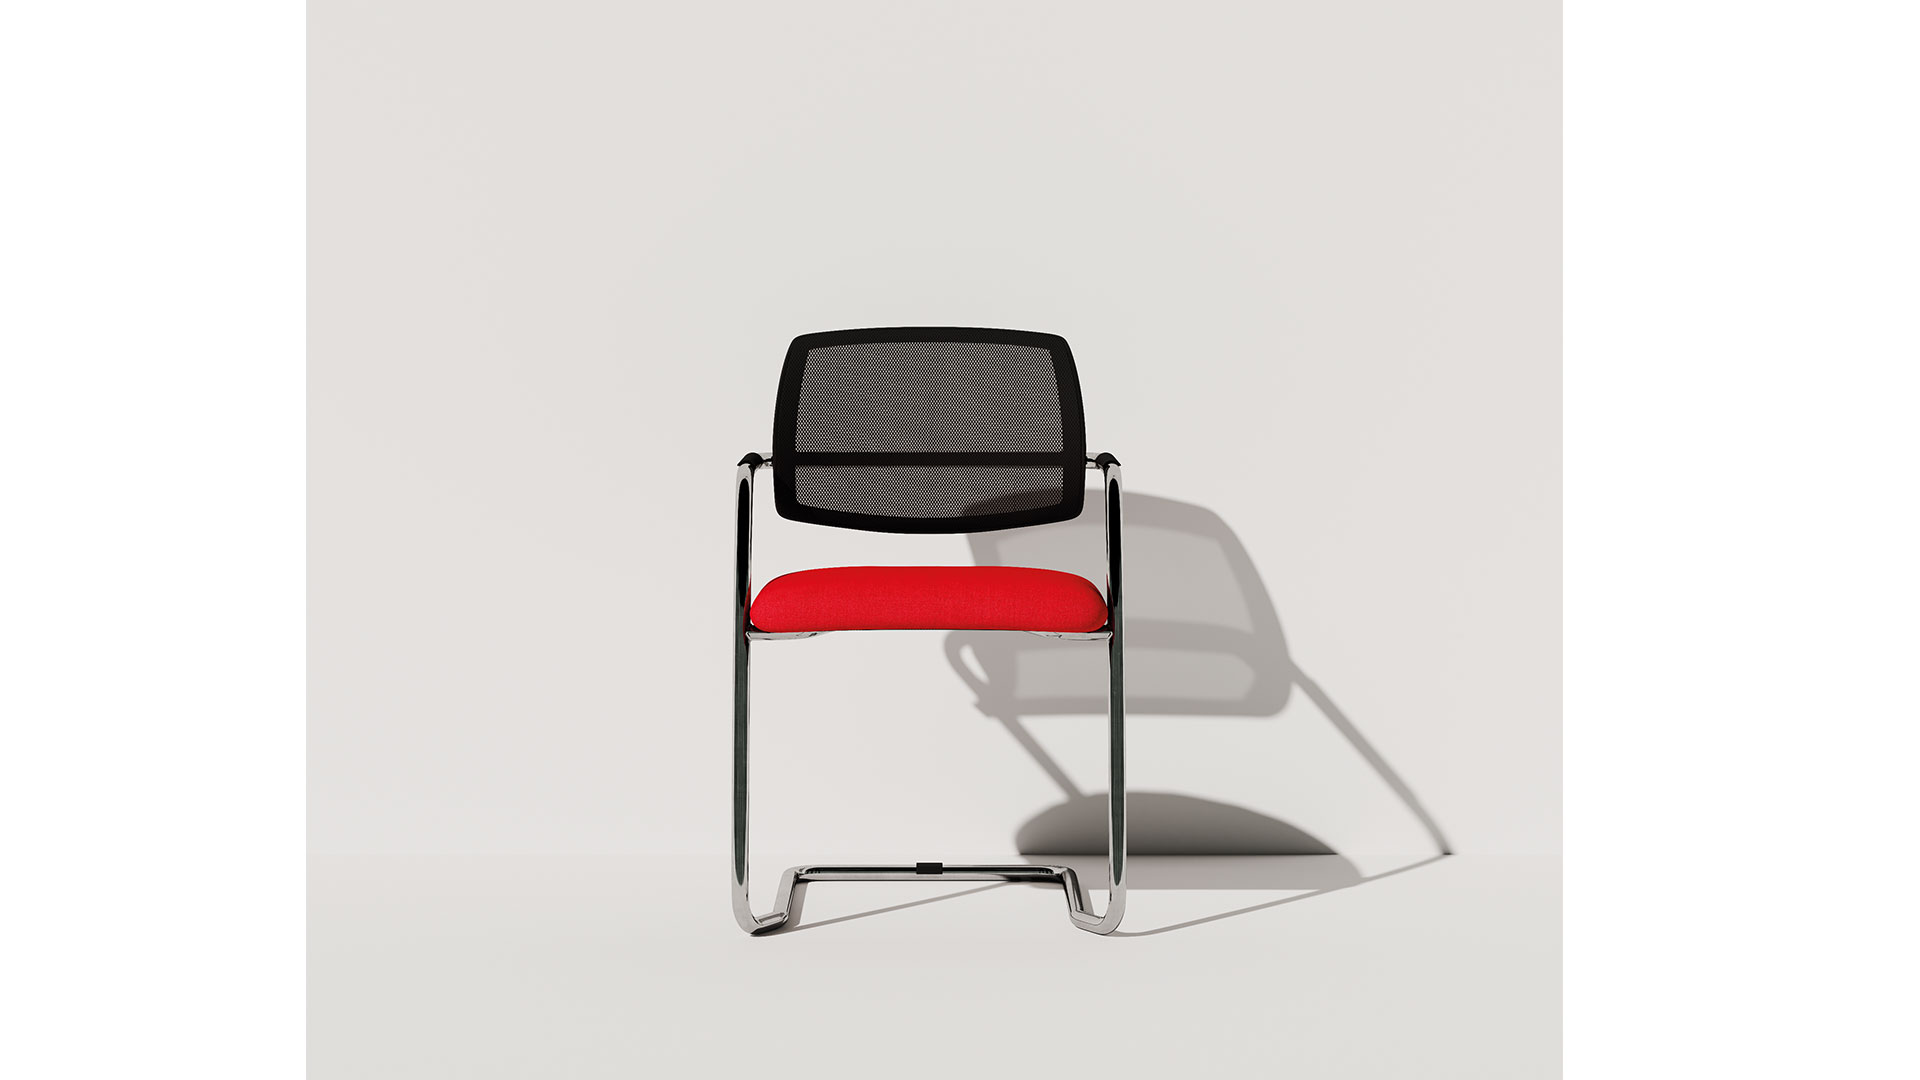 Кресла со спинкой-сеткой на полозьях в коллекции Sistema Rete